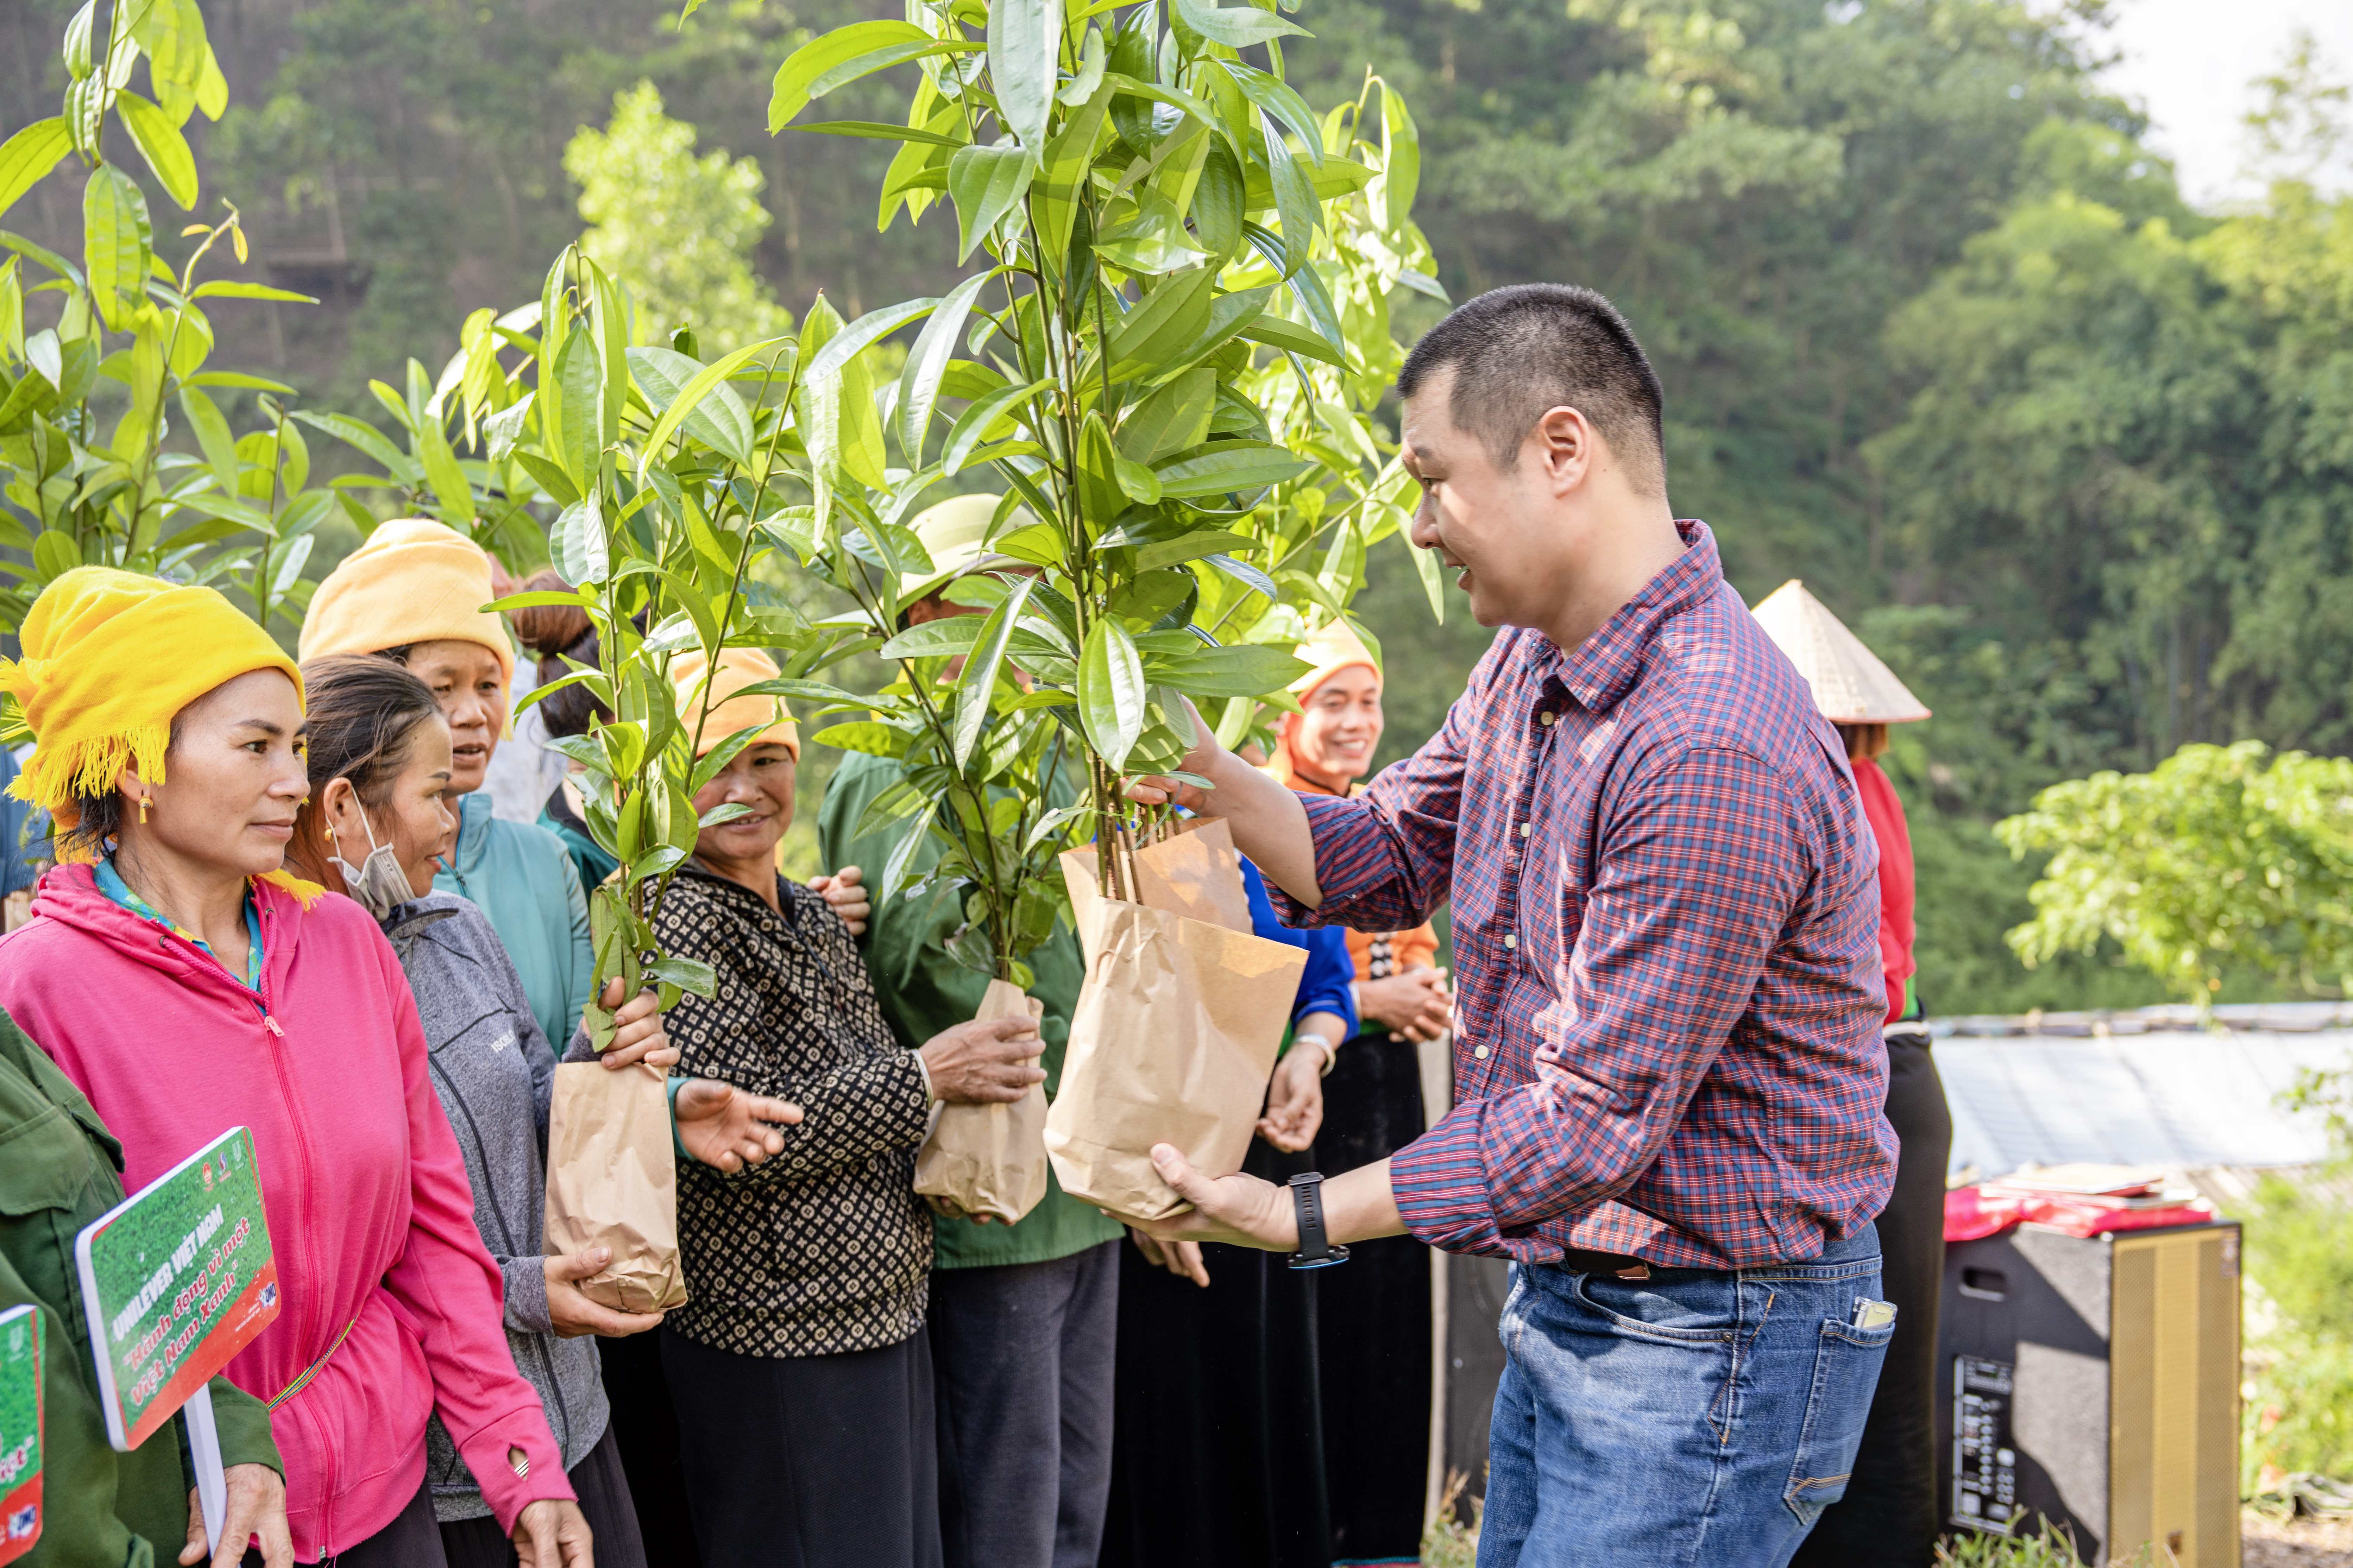 Tích cực hoàn thành mục tiêu trồng 1 triệu cây “Vì một Việt Nam xanh”